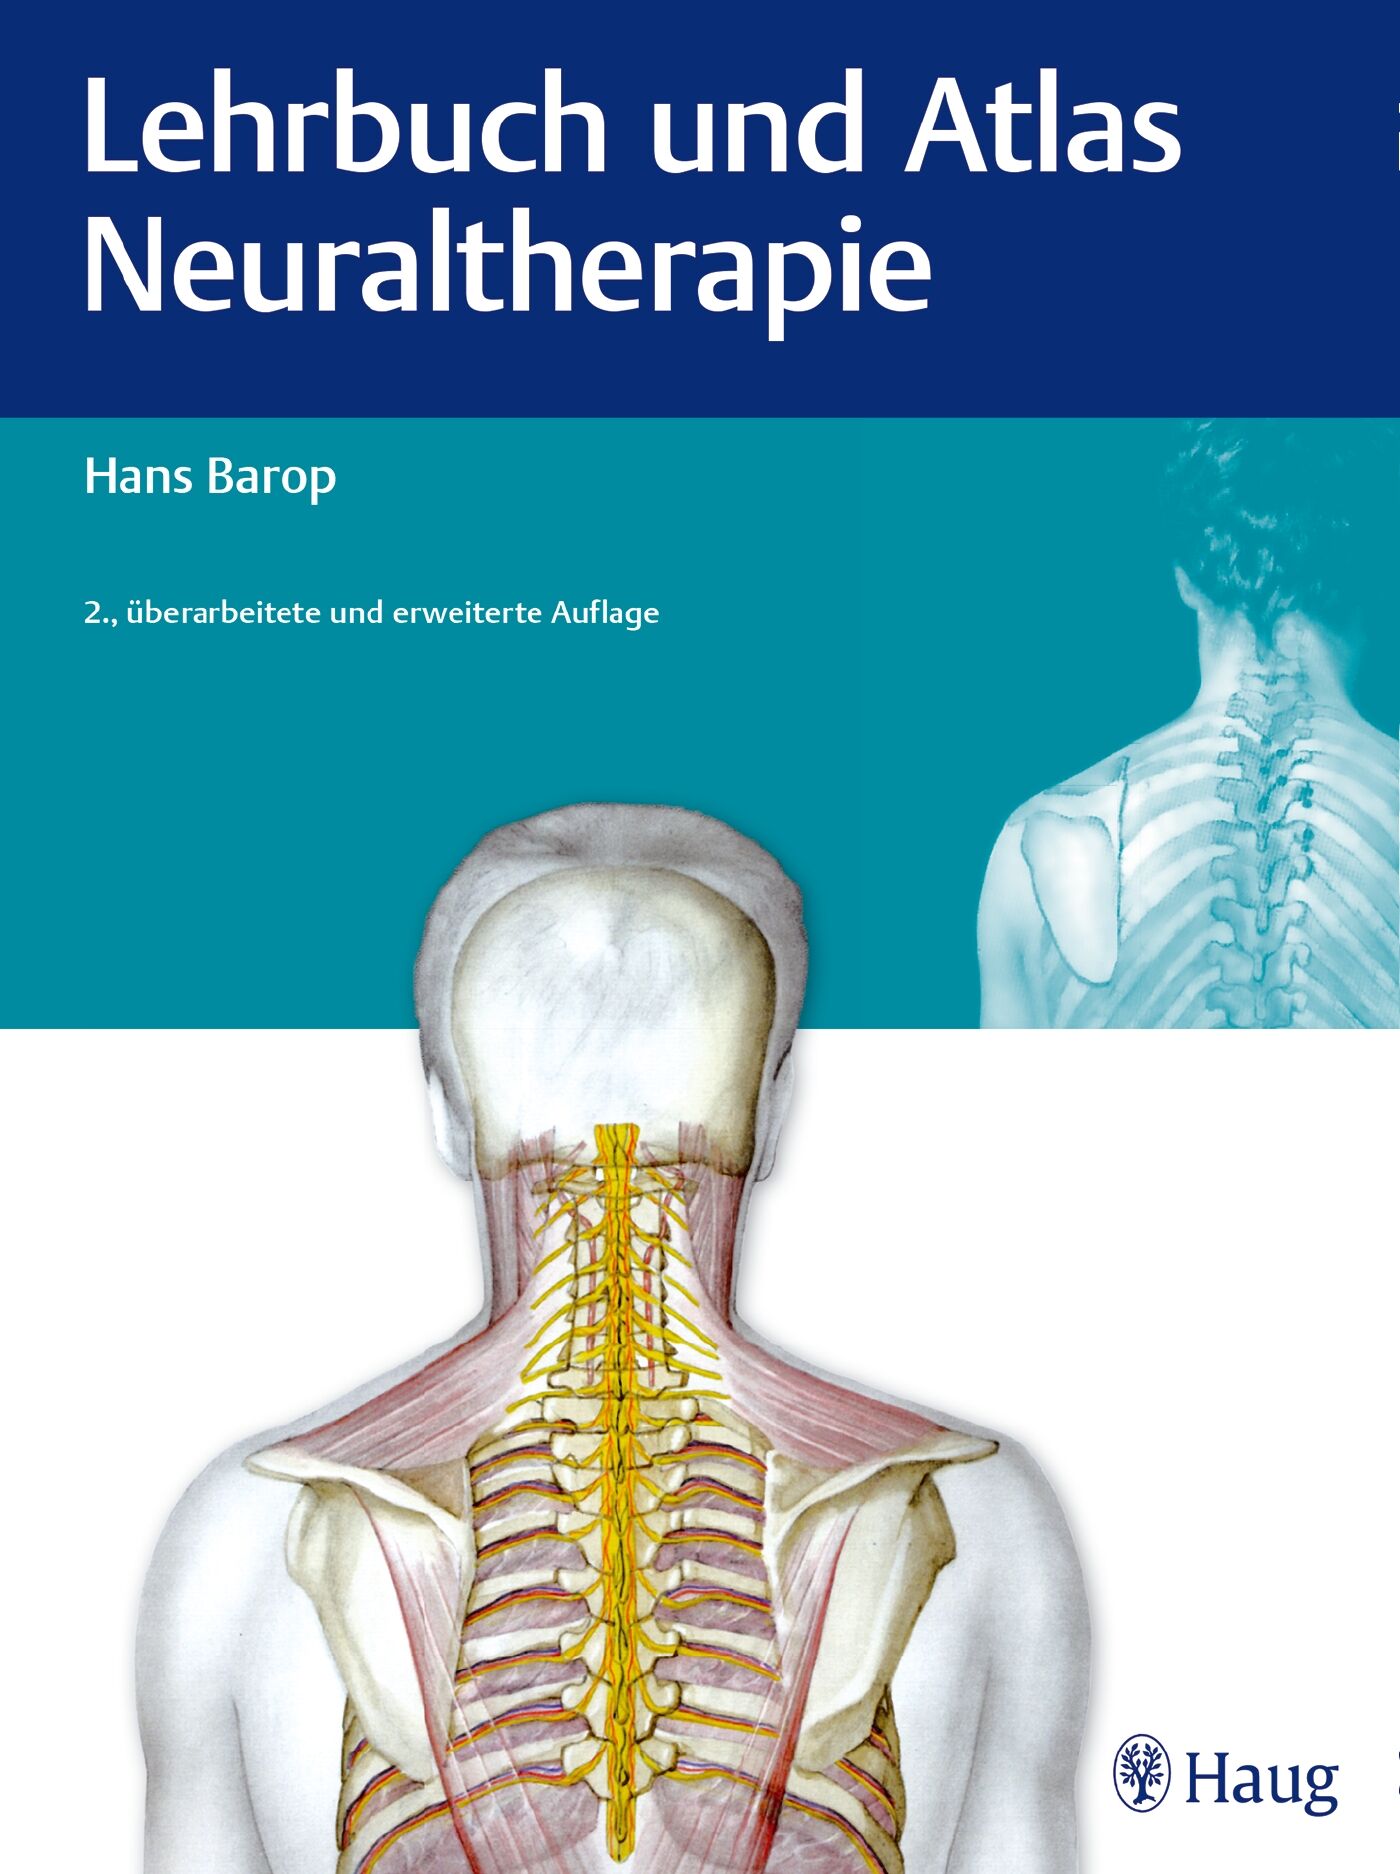 Lehrbuch und Atlas Neuraltherapie, 9783830477686